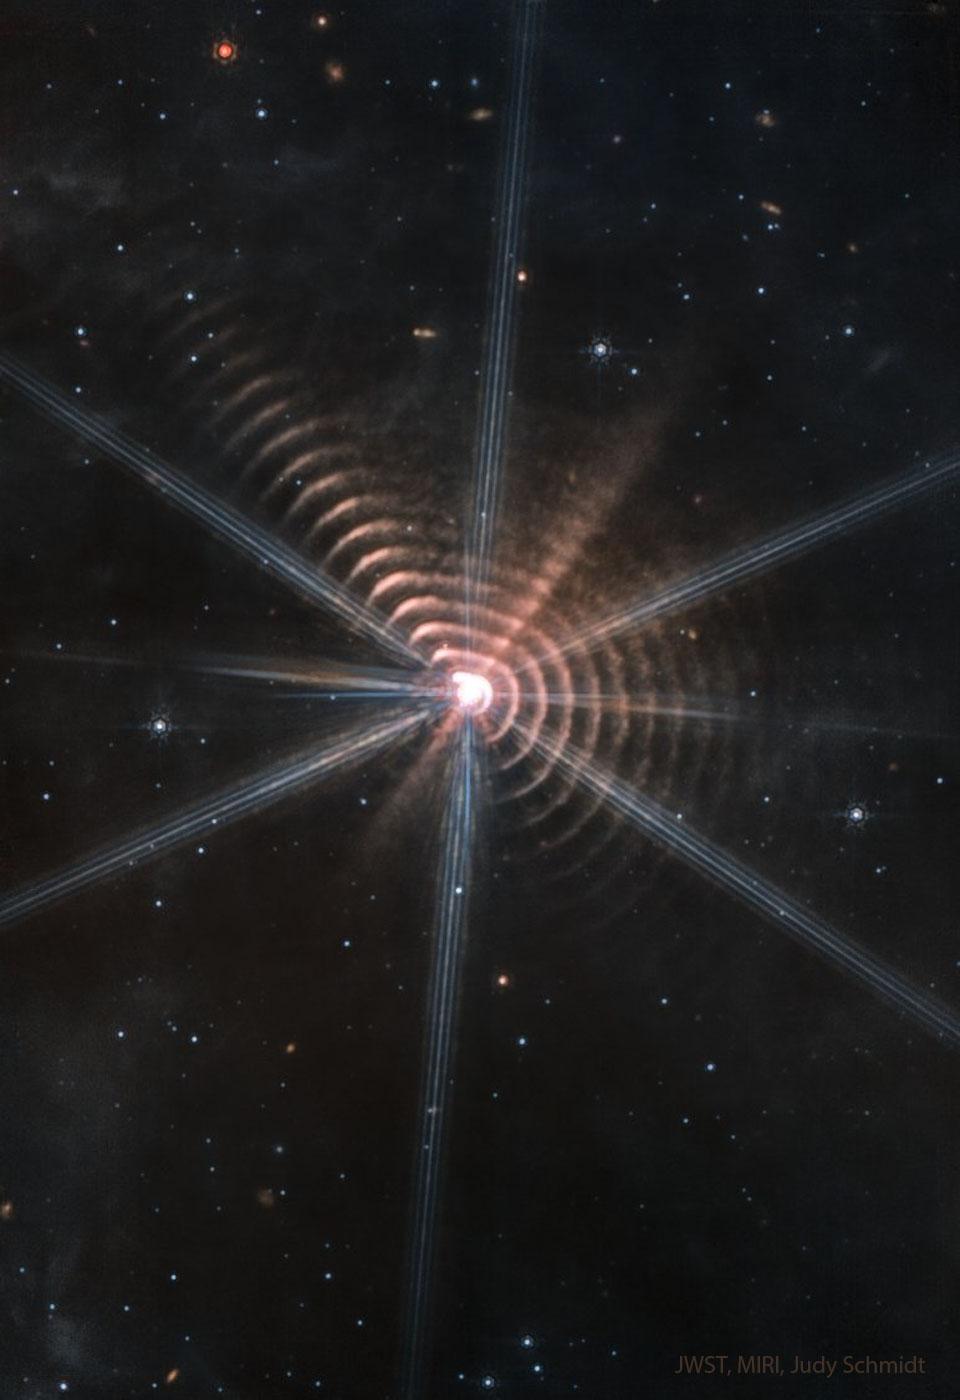 حلقات دائريّة عديدة تحيط بنجم مركزي. تظهر نجوم أخرى في حقل مظلم لولا ذلك